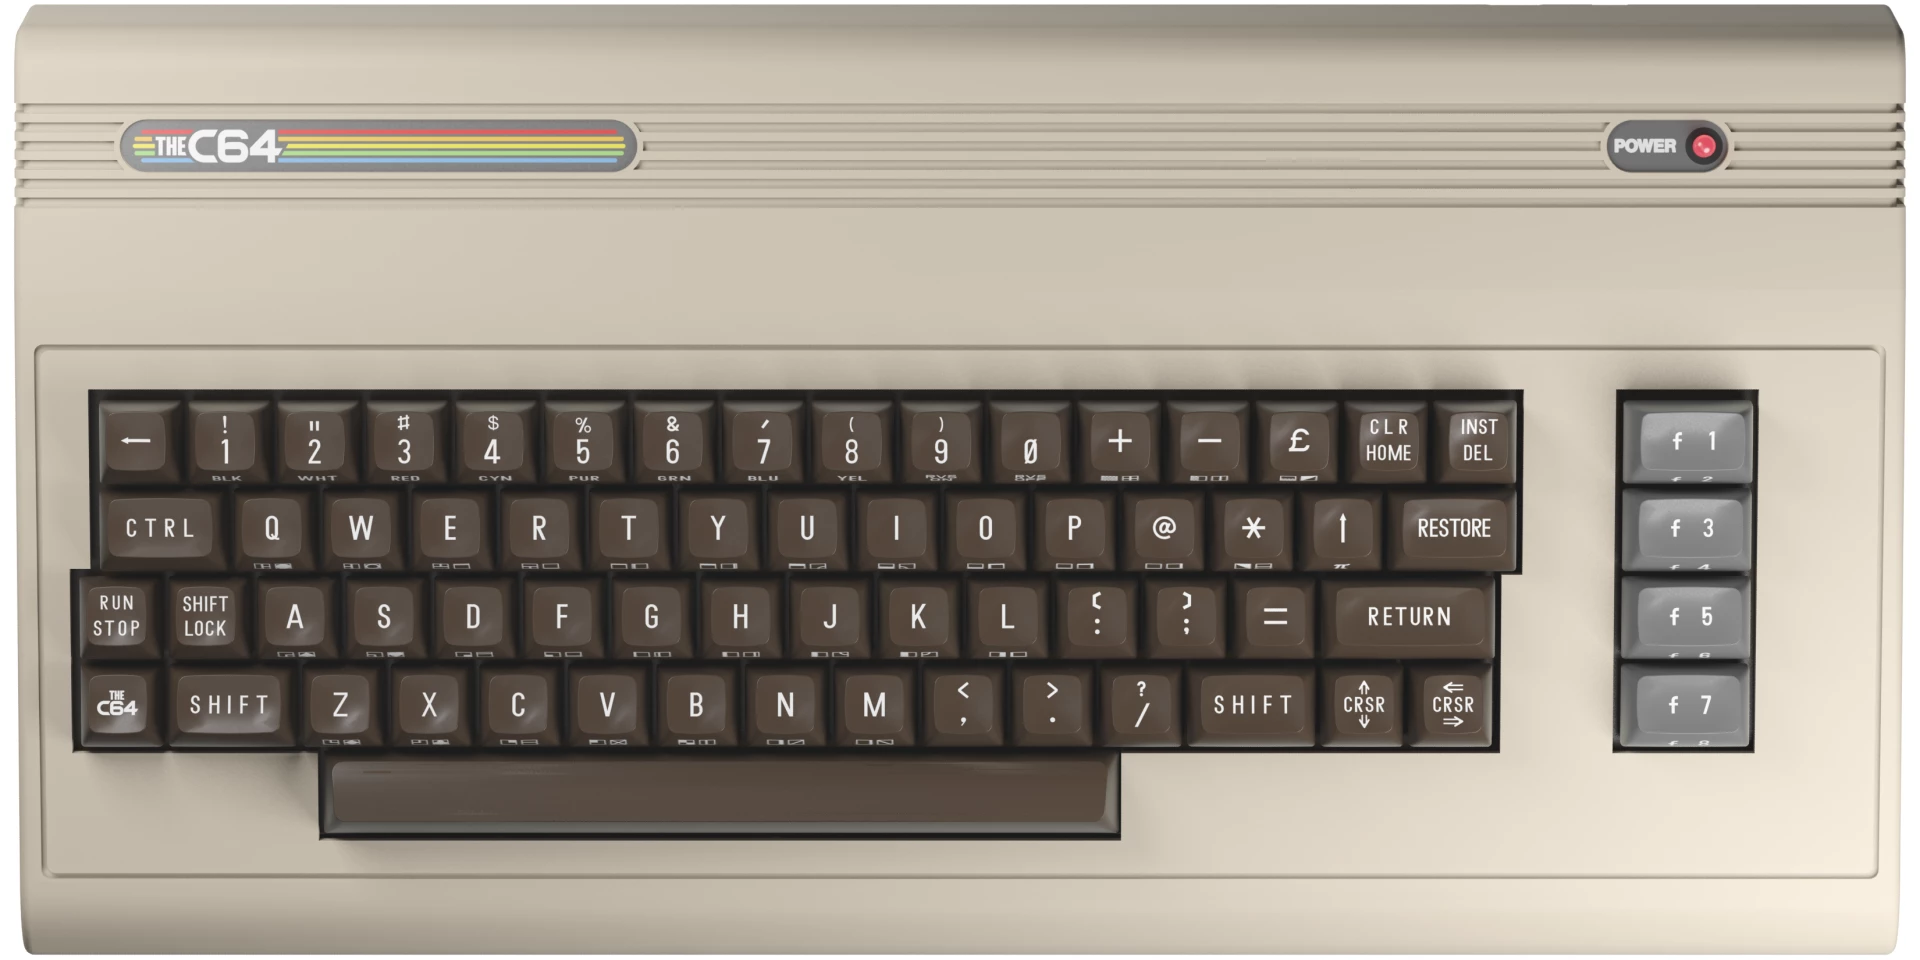 The C64 Microcomputer voor de TV Games kopen op nedgame.nl